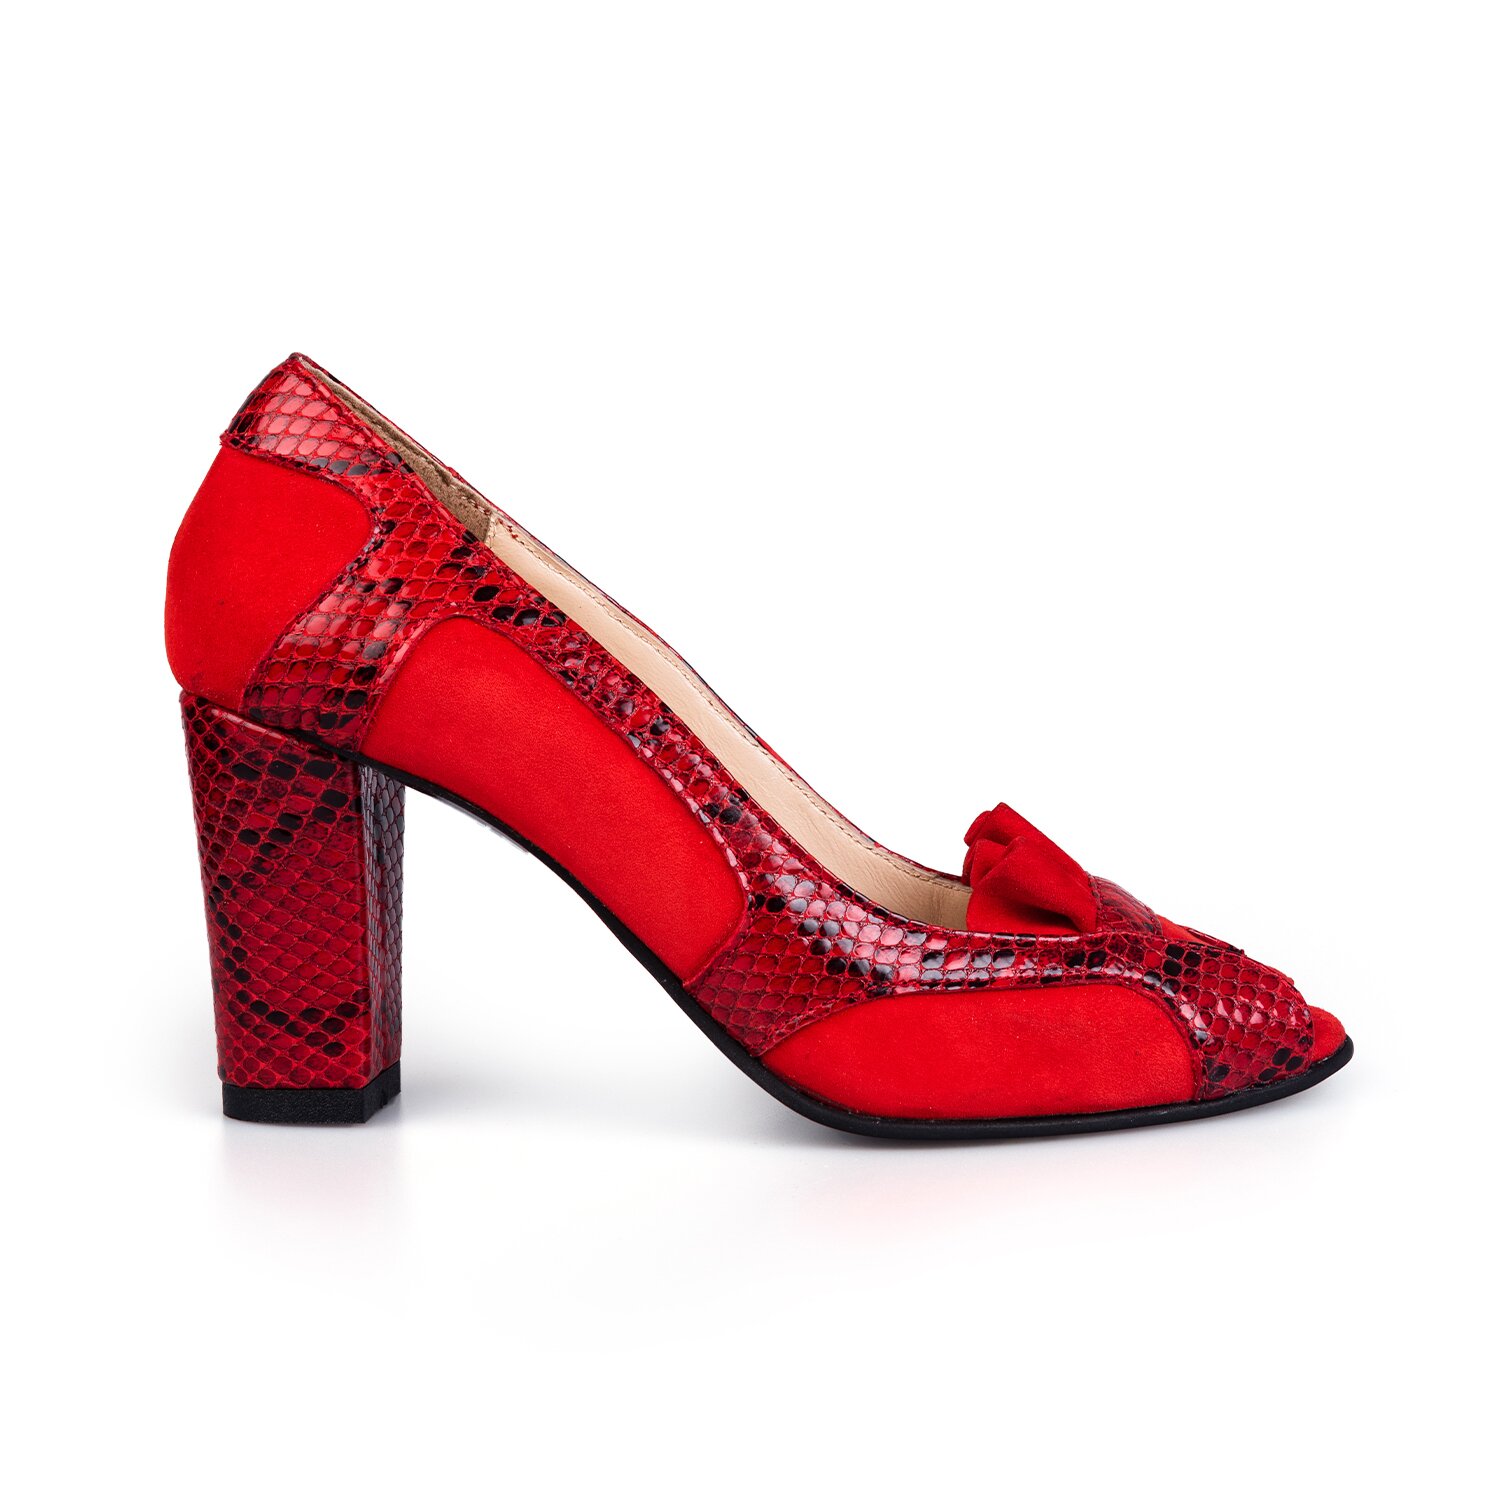 Pantofi eleganți damă, decupați din piele naturală - 2043 Roșu Velur Box